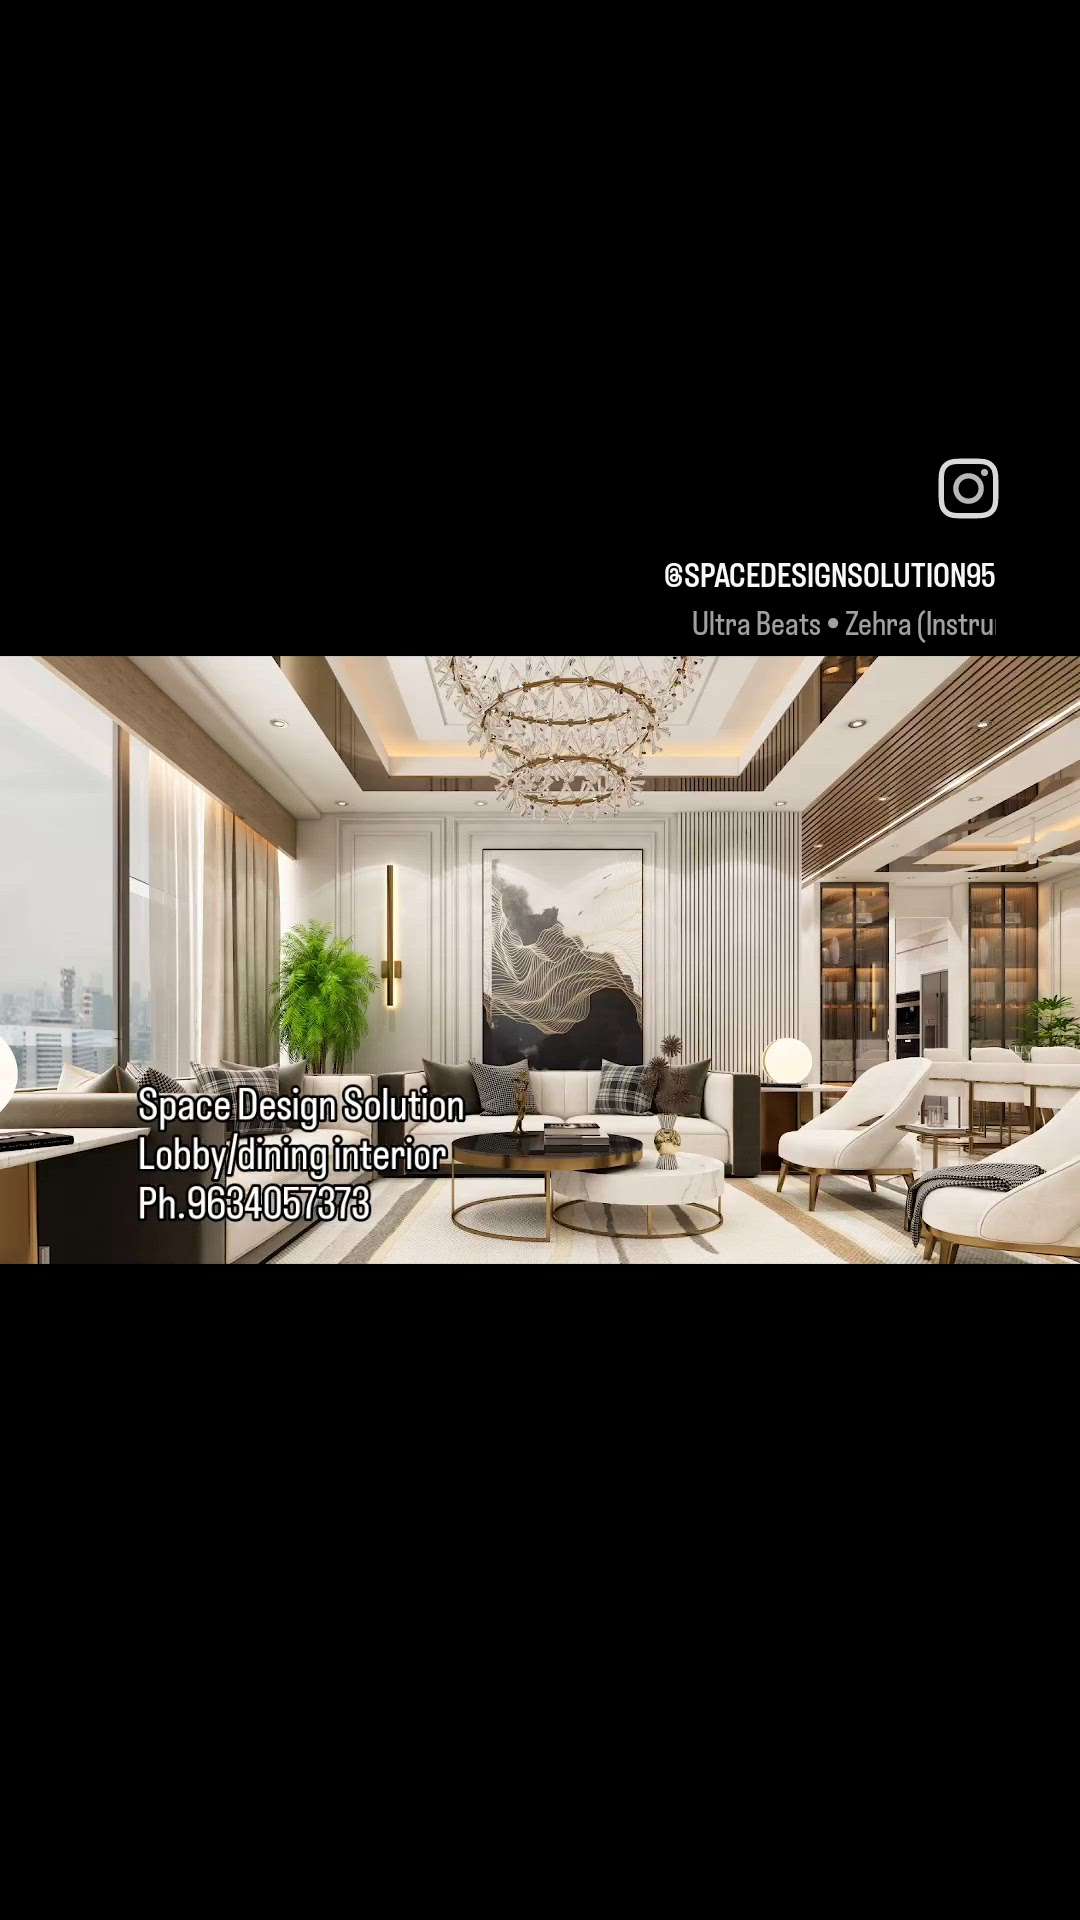 #lobbydining #luxuryinterior #luxurylifestyle #modern #arcitecture #Space #design #solution 
www.spacedesignsolution.com 
9634057373